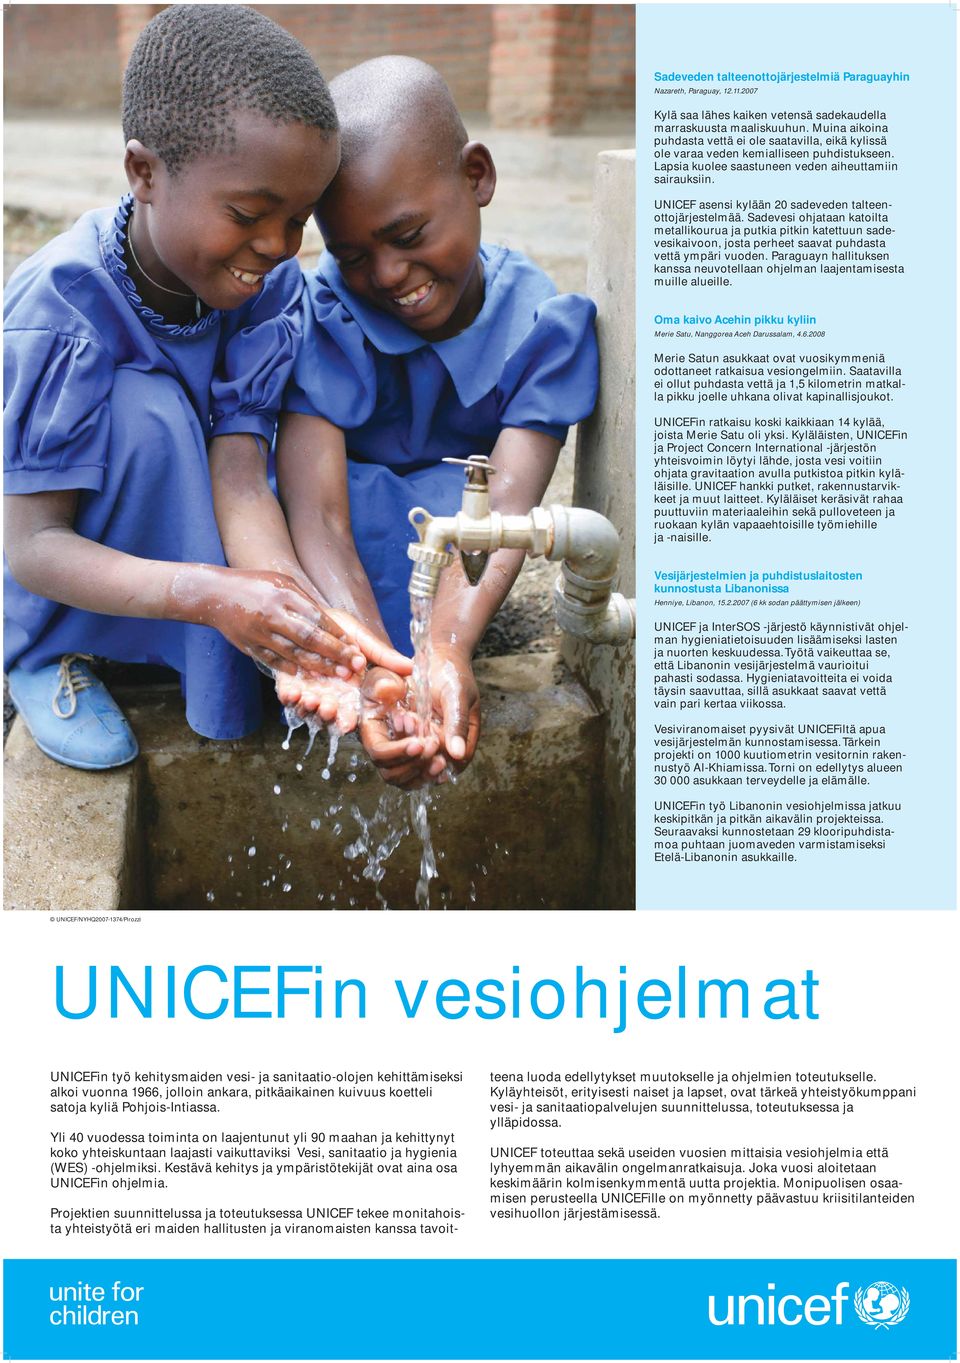 UNICEF asensi kylään 20 sadeveden talteenottojärjestelmää. Sadevesi ohjataan katoilta metallikourua ja putkia pitkin katettuun sadevesikaivoon, josta perheet saavat puhdasta vettä ympäri vuoden.